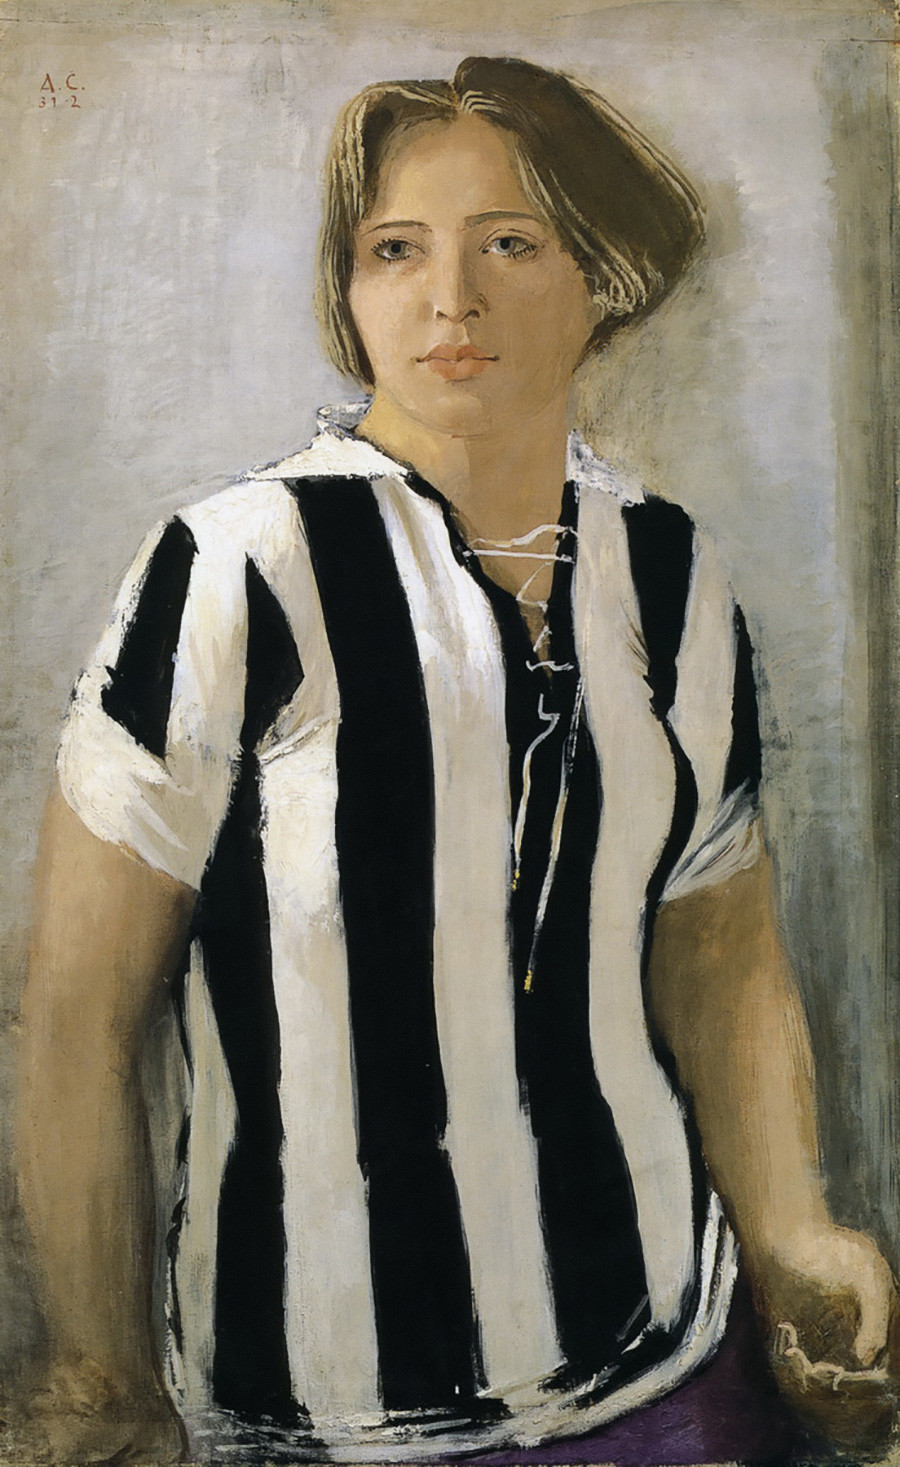 Un fille dans un T shirt par Alexander Samokhvalov, 1932
